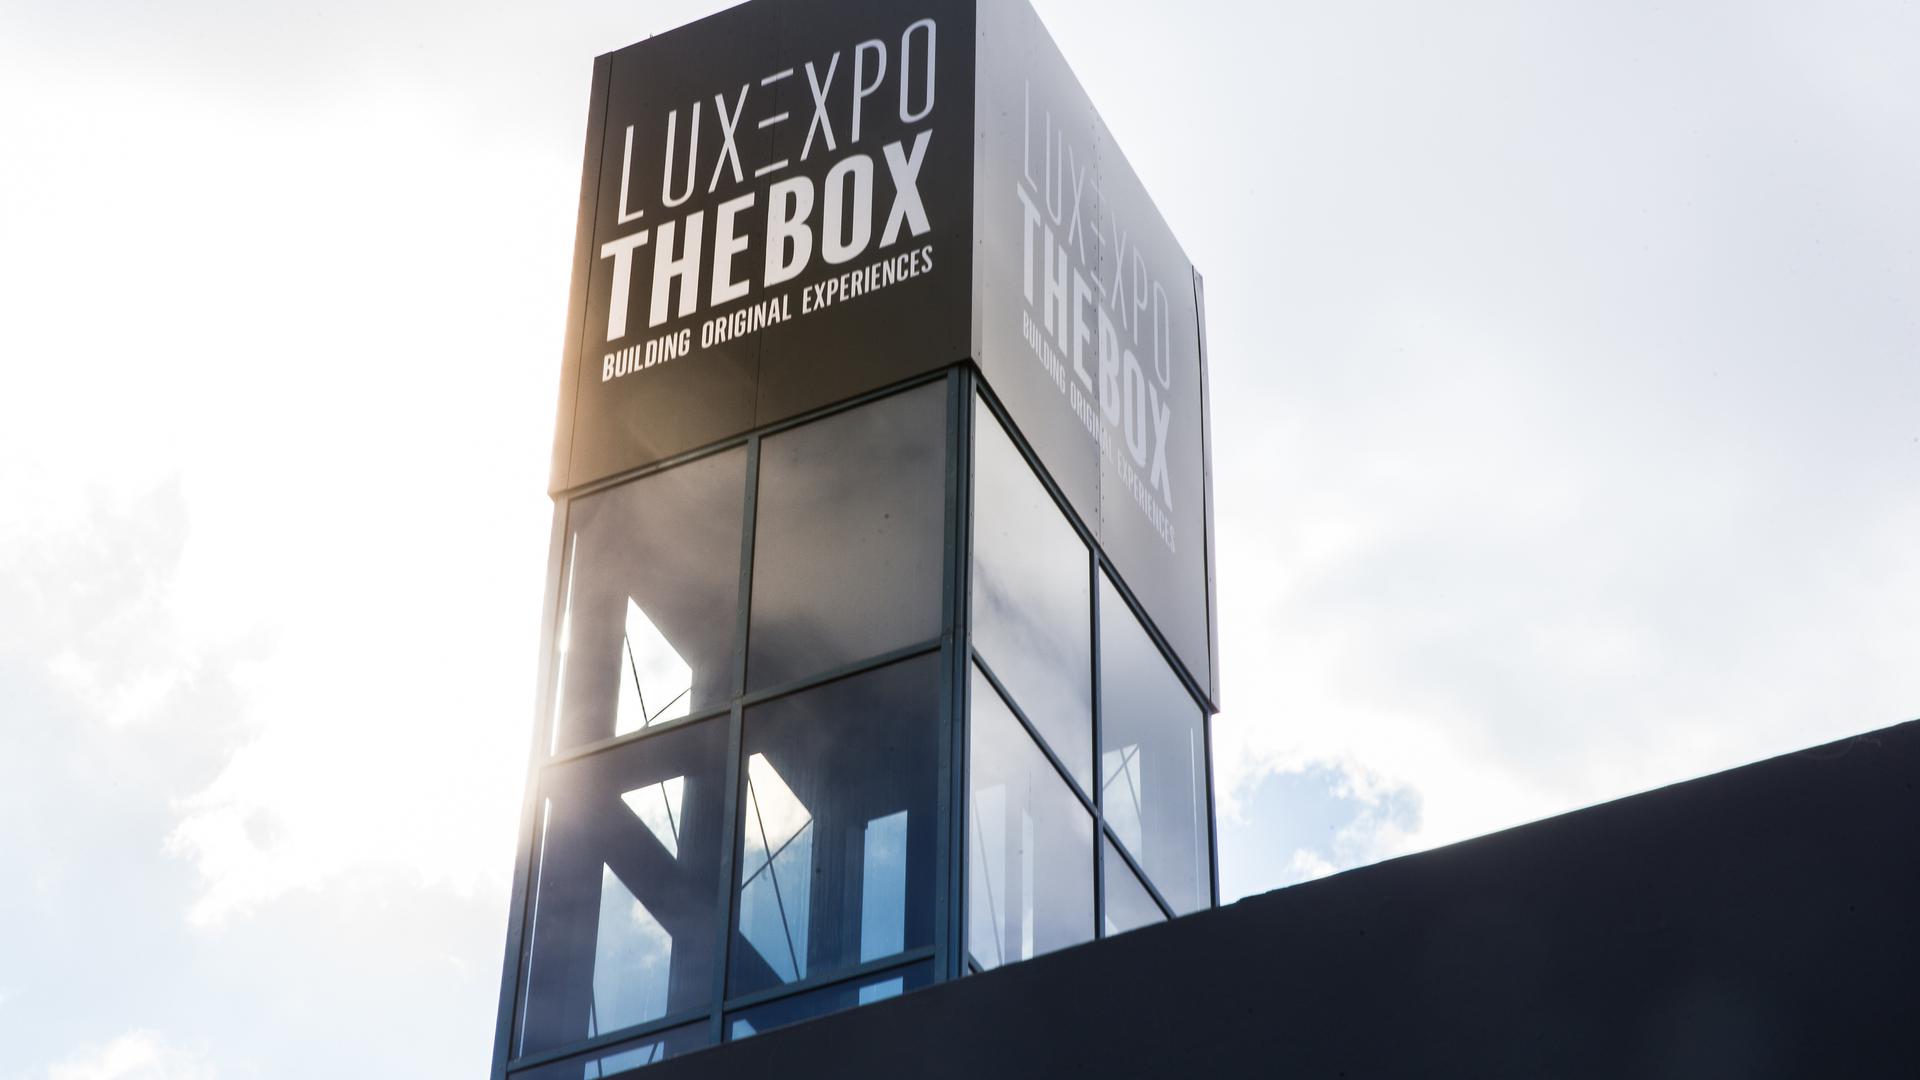 En attendant la décision sur son futur emplacement, les actionnaires de Luxexpo The Box choisissent de mettre en place des «investissements technologiques» destinés notamment à faire émerger «une solution génératrice de nouveaux revenus»